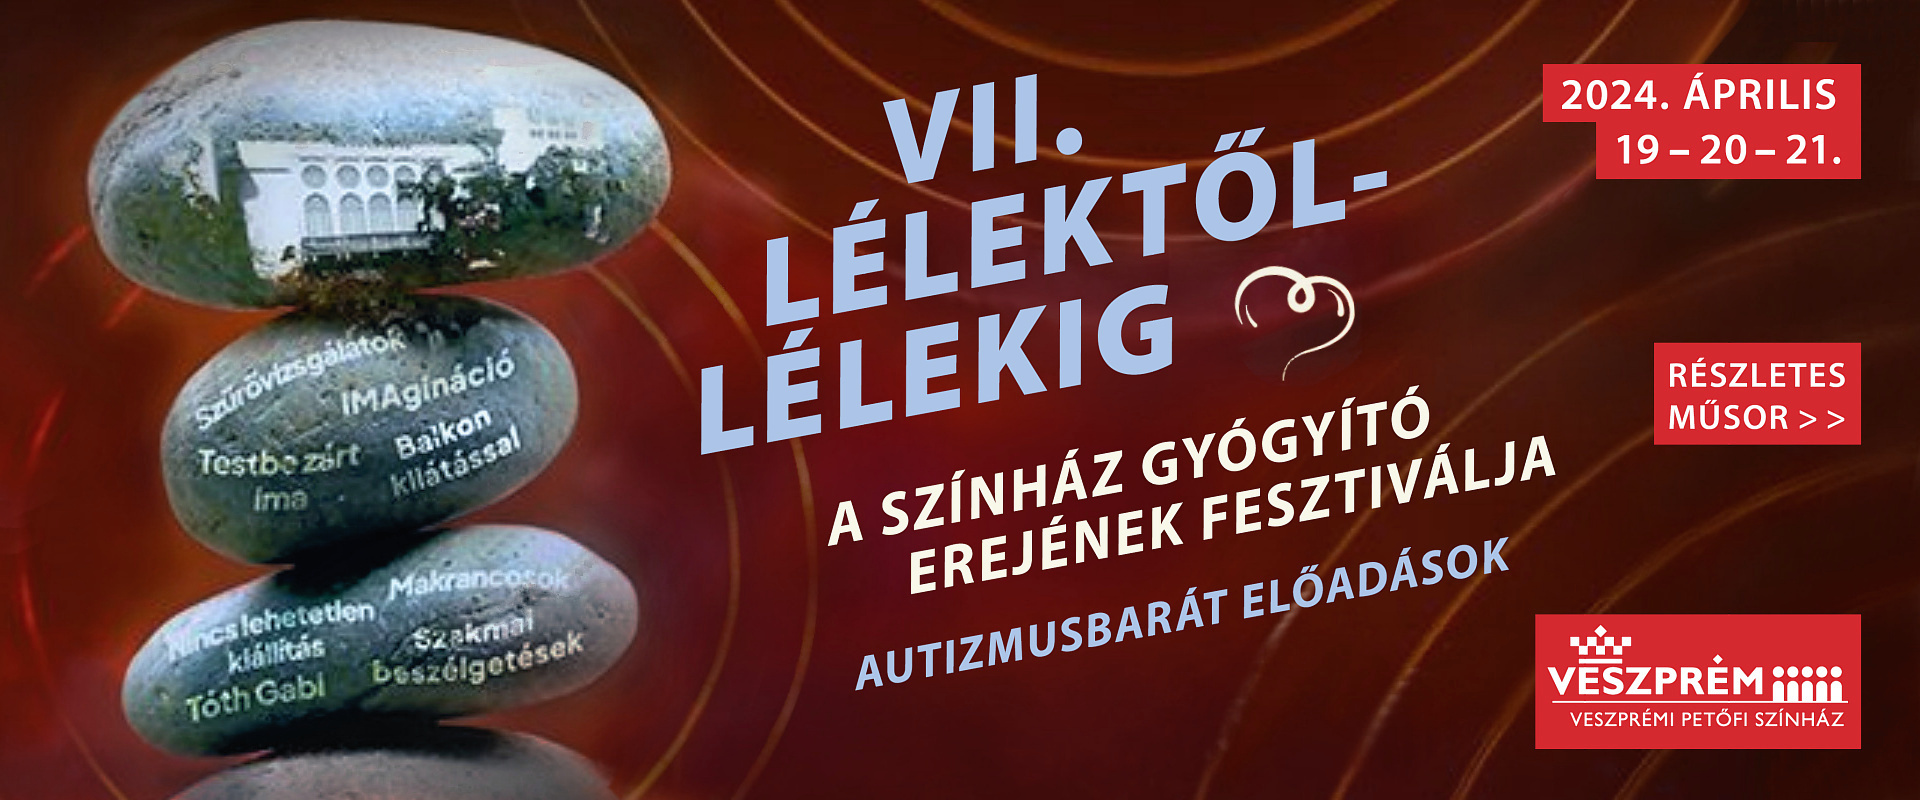 Lelektol Lelekig Fest